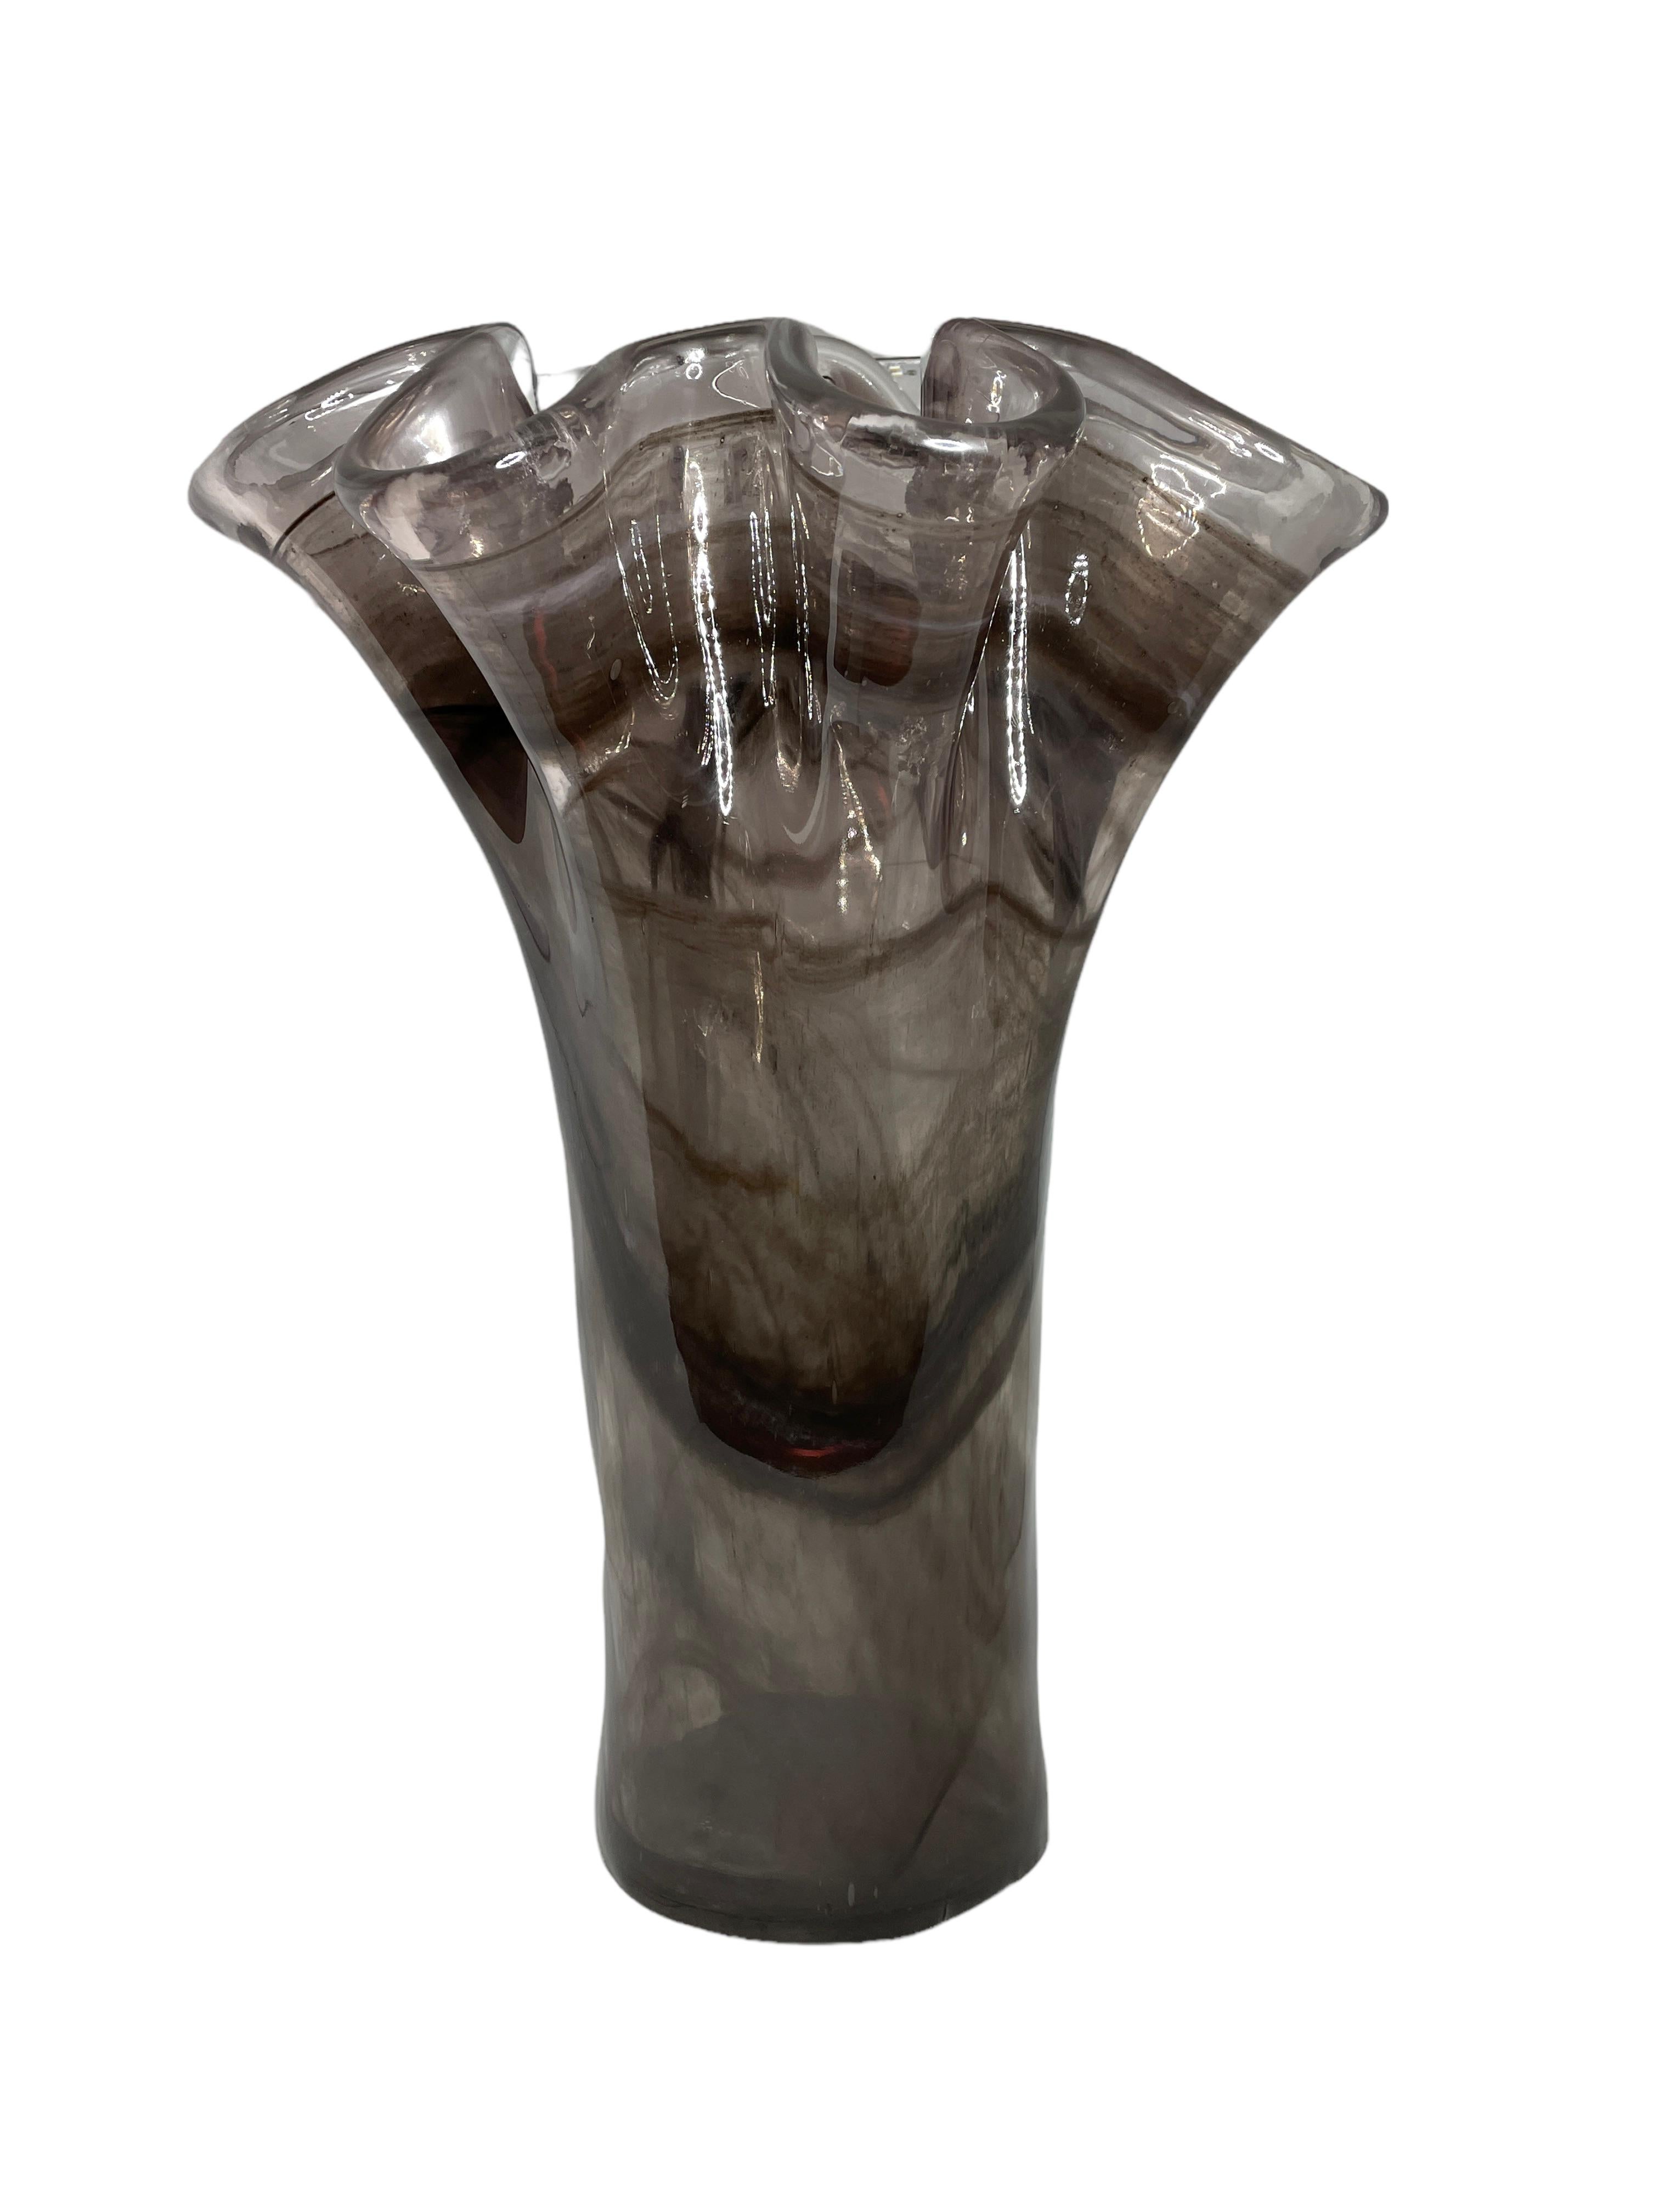 hankerchief vase